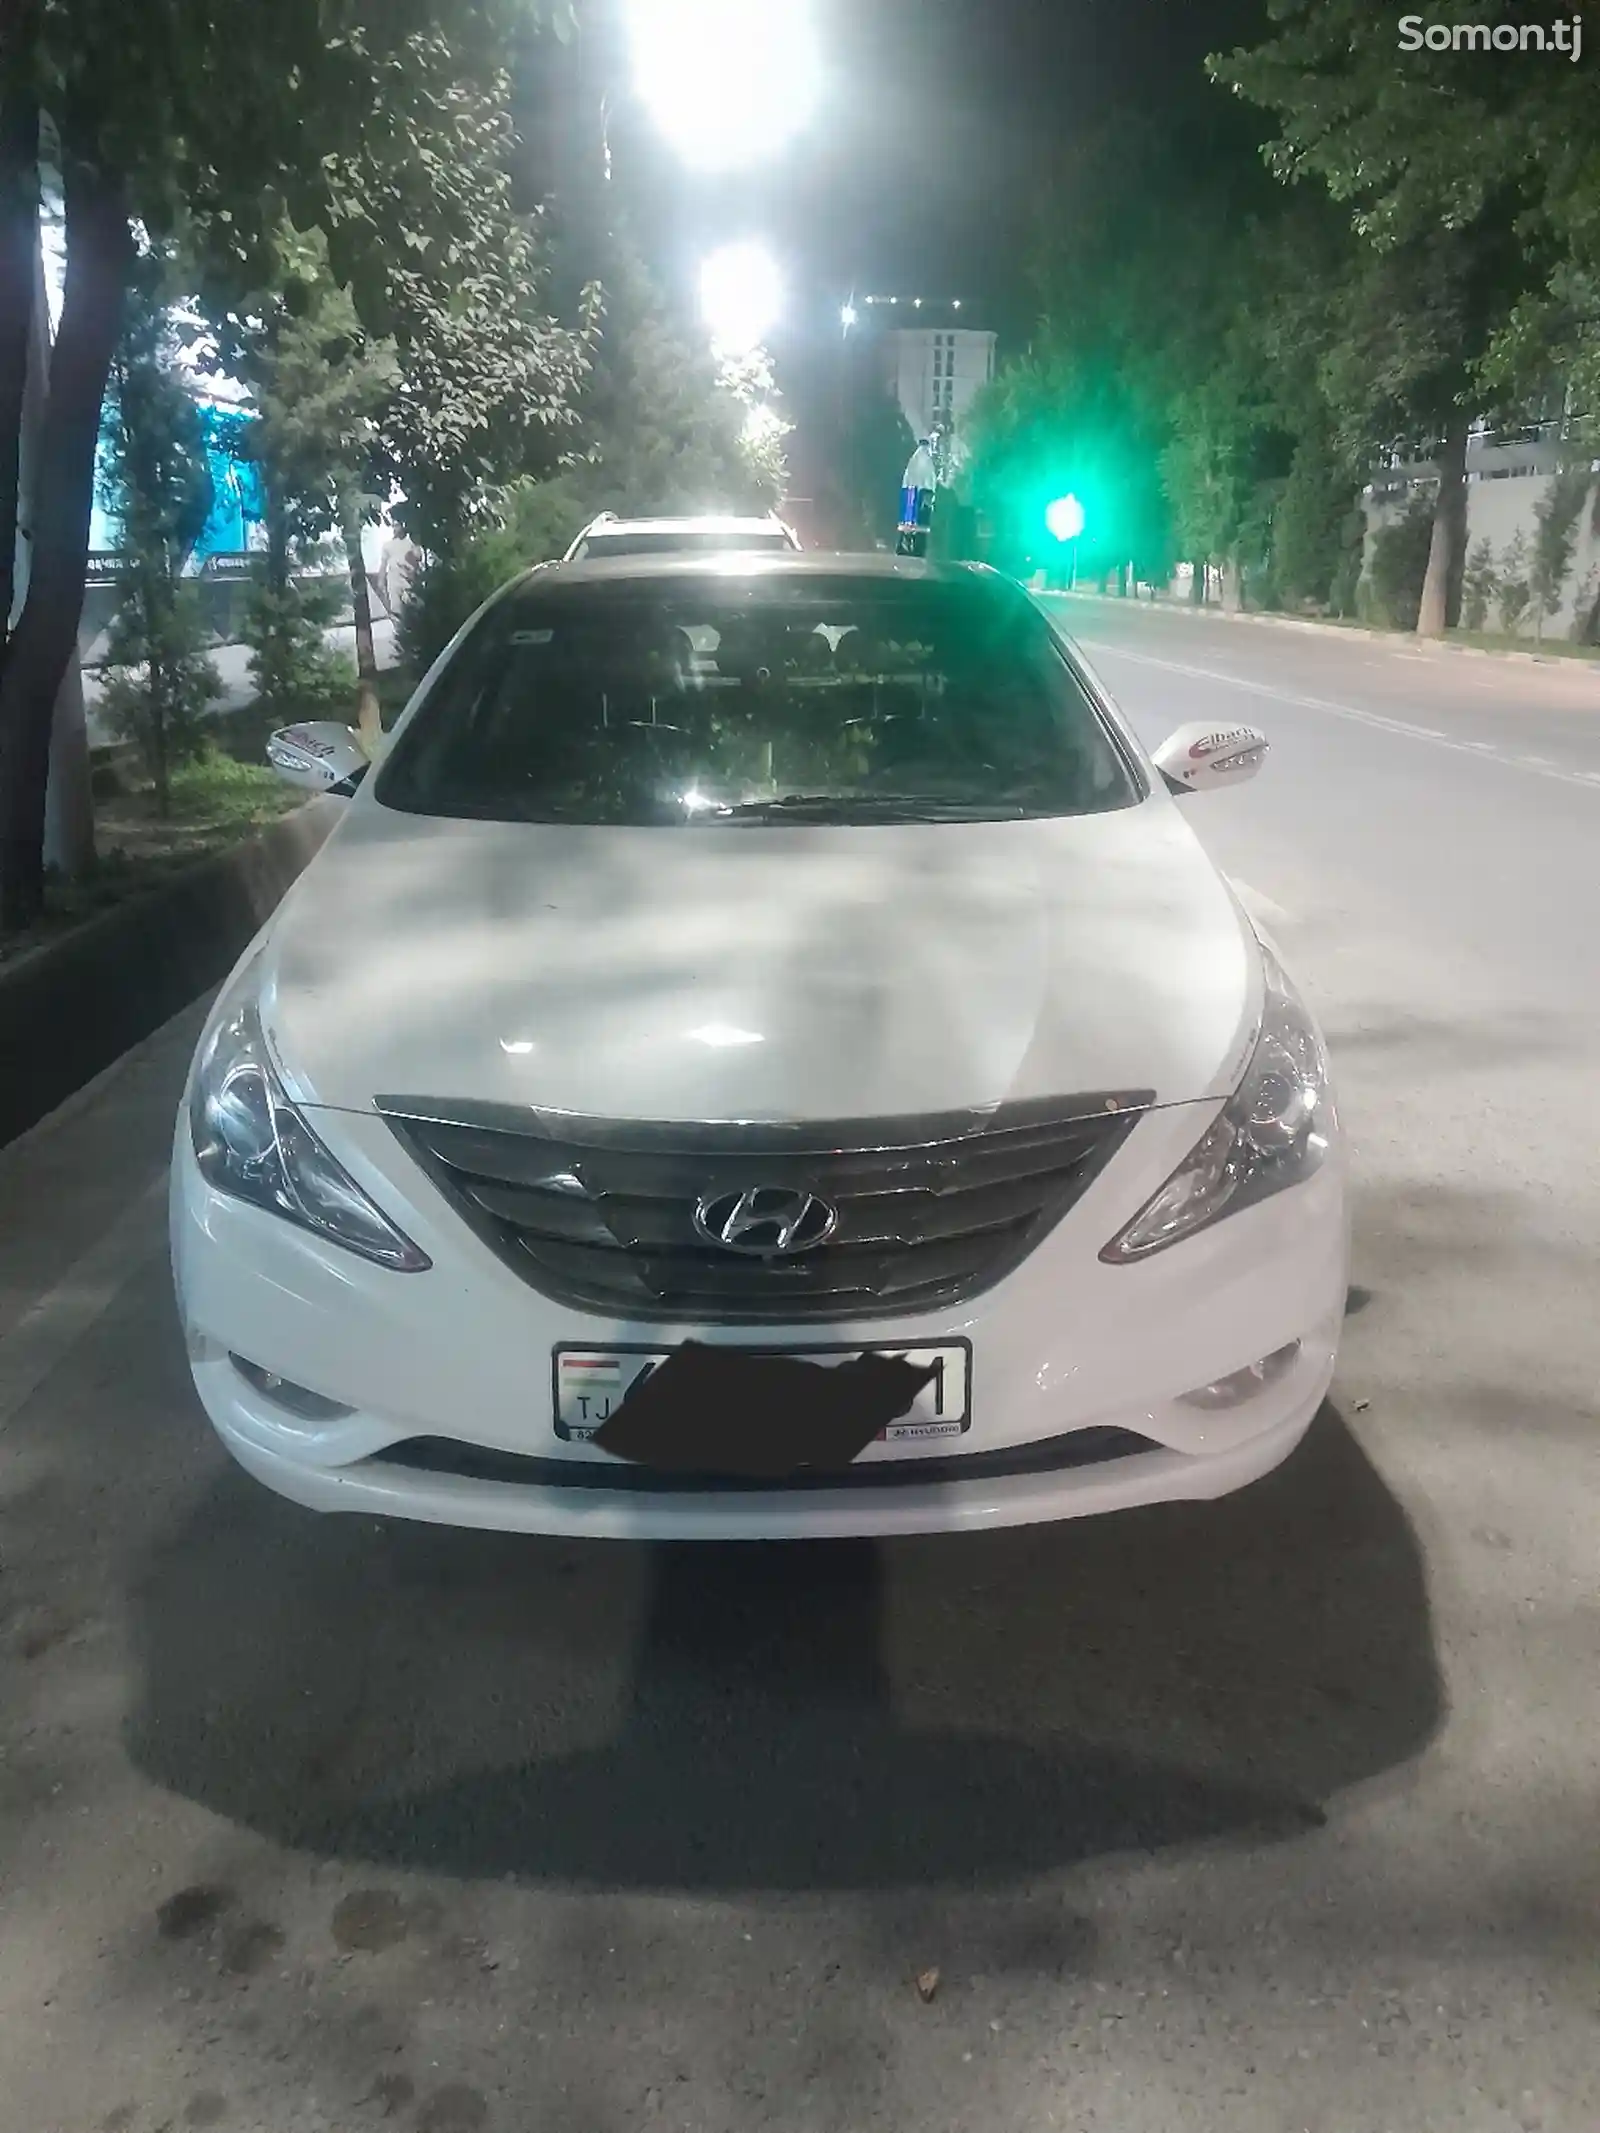 Hyundai Sonata, 2011-1